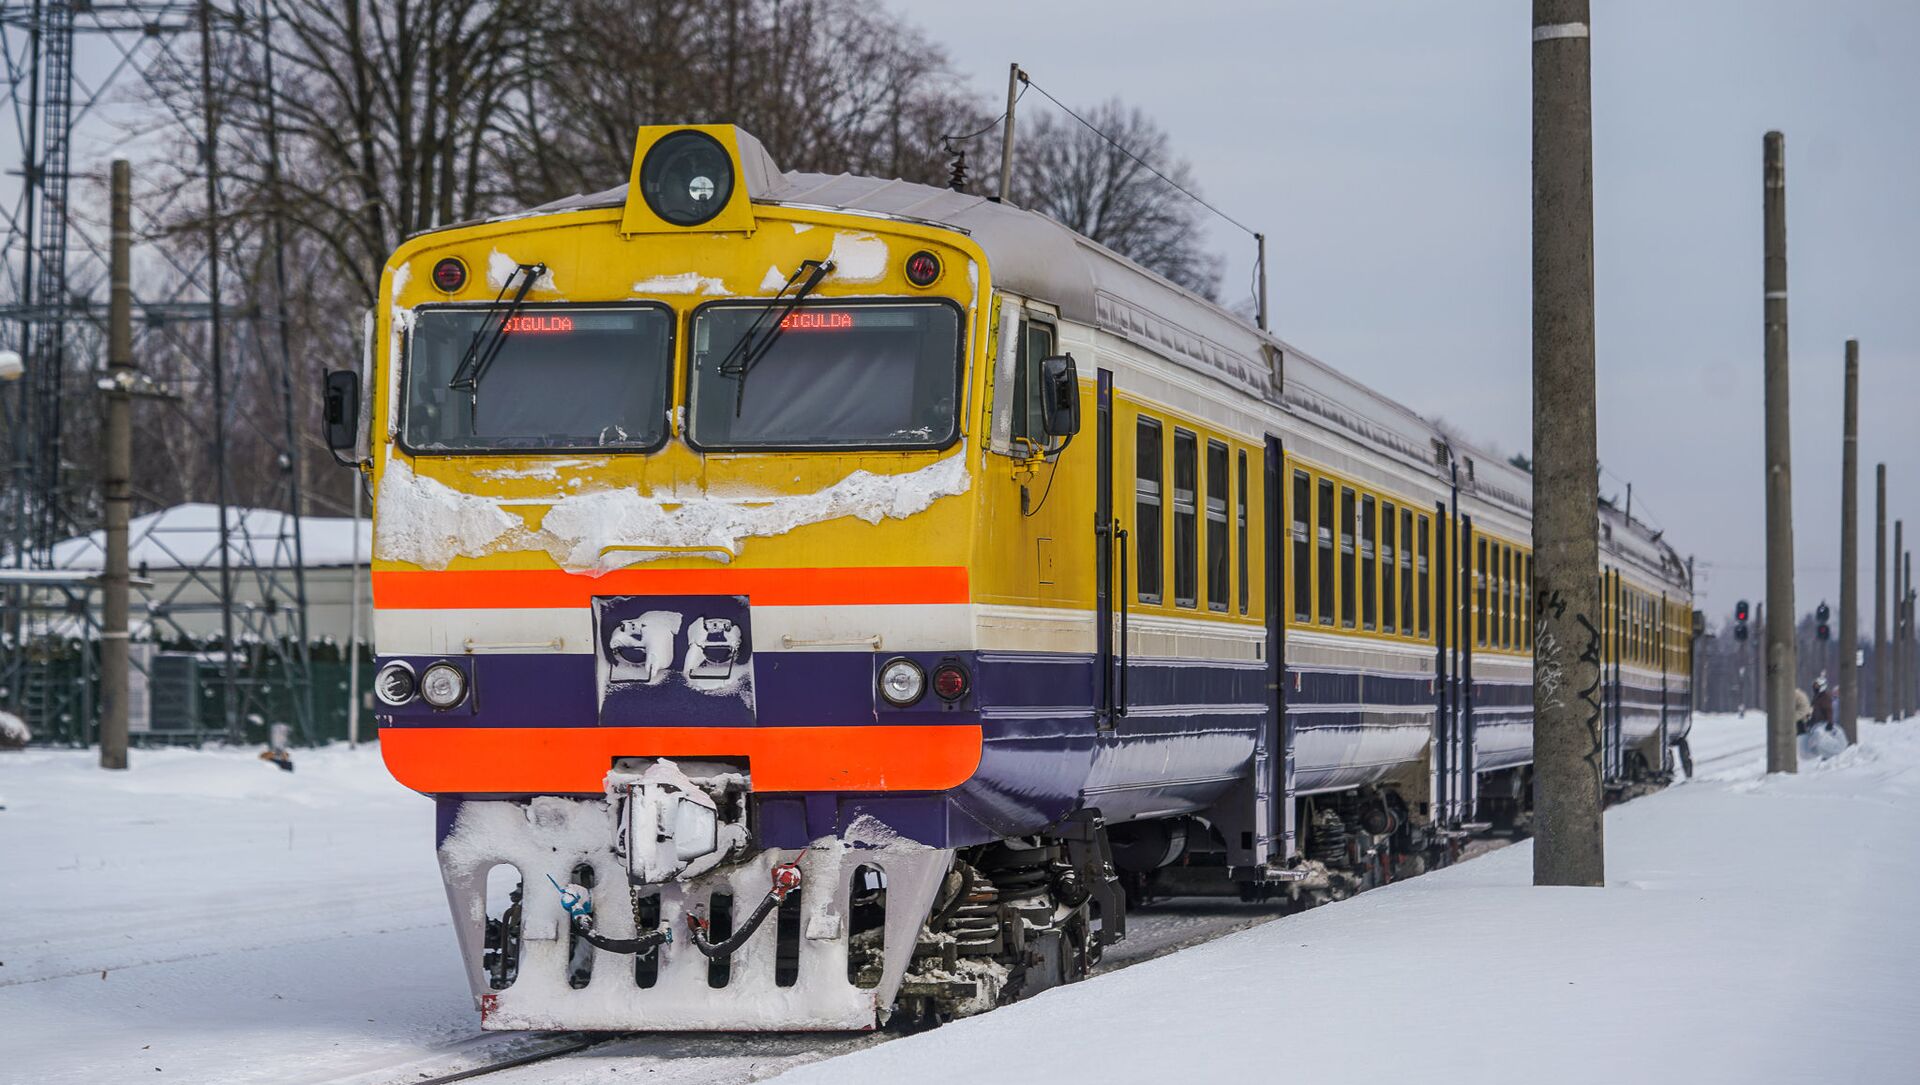 Дизельный поезд Рига-Сигулда Латвийской железной дороги - Sputnik Latvija, 1920, 19.02.2021